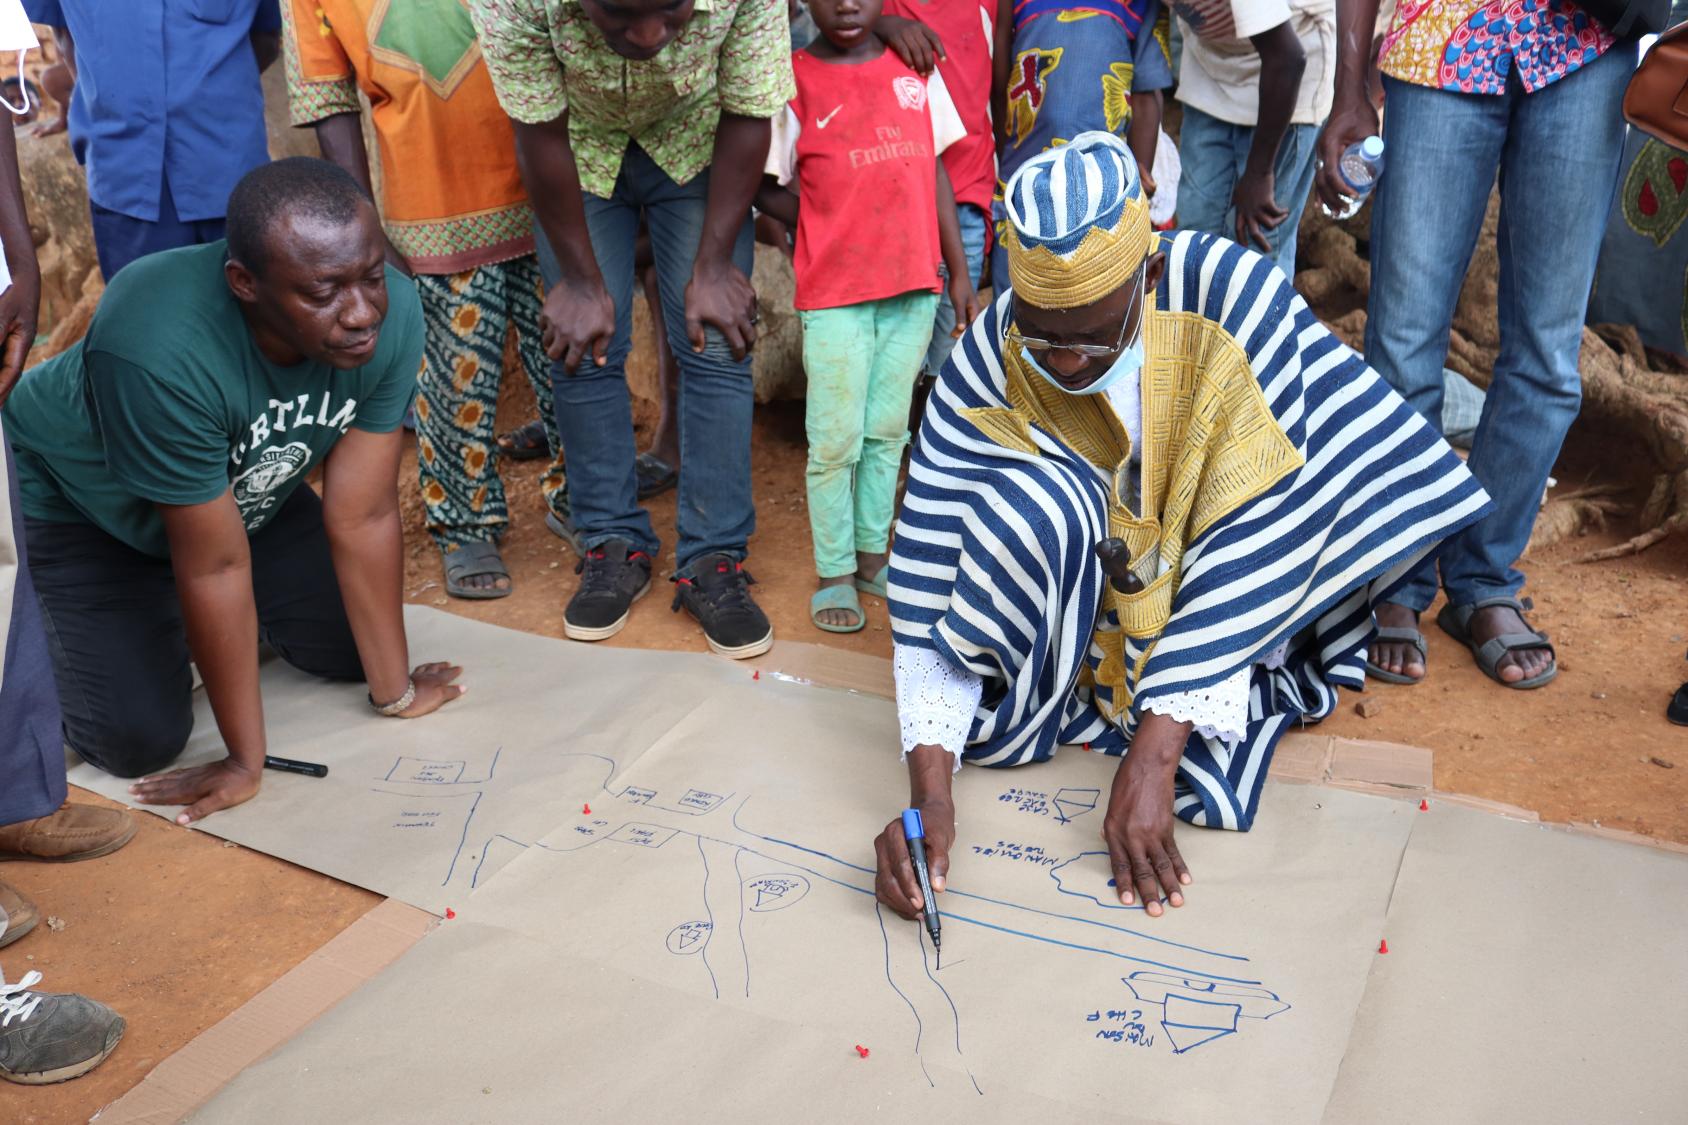 Мужчина в традиционной ивуарийской одежде сидит на земле в окружении нескольких человек, записывая данные на большом листе бумаги.